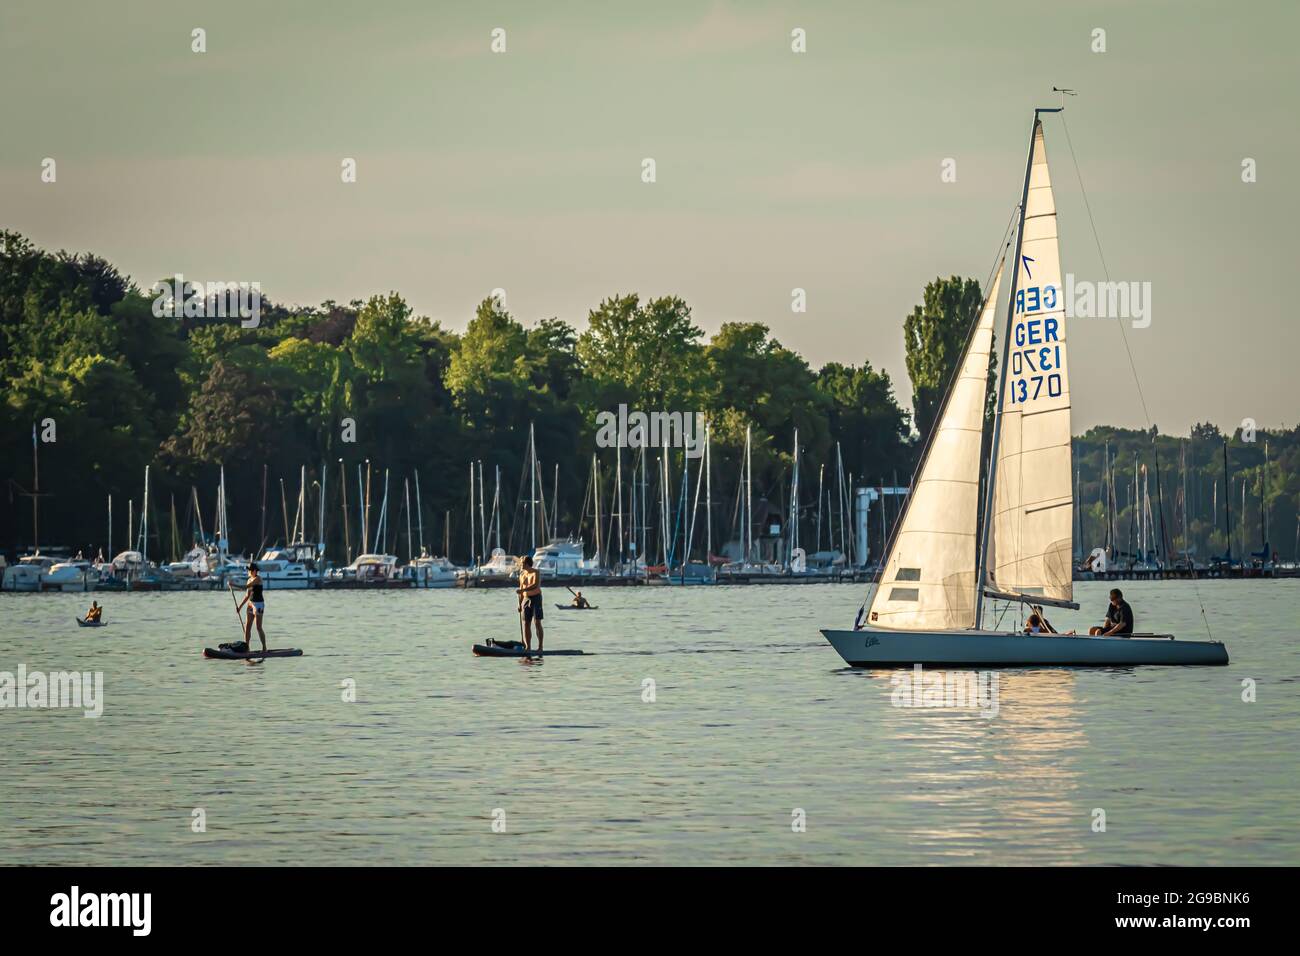 Berlin, Deutschland - 24. Juli 2019: Wassersportler am Wannsee mit Segelbooten, Paddelbrettern, Kajaks Stockfoto